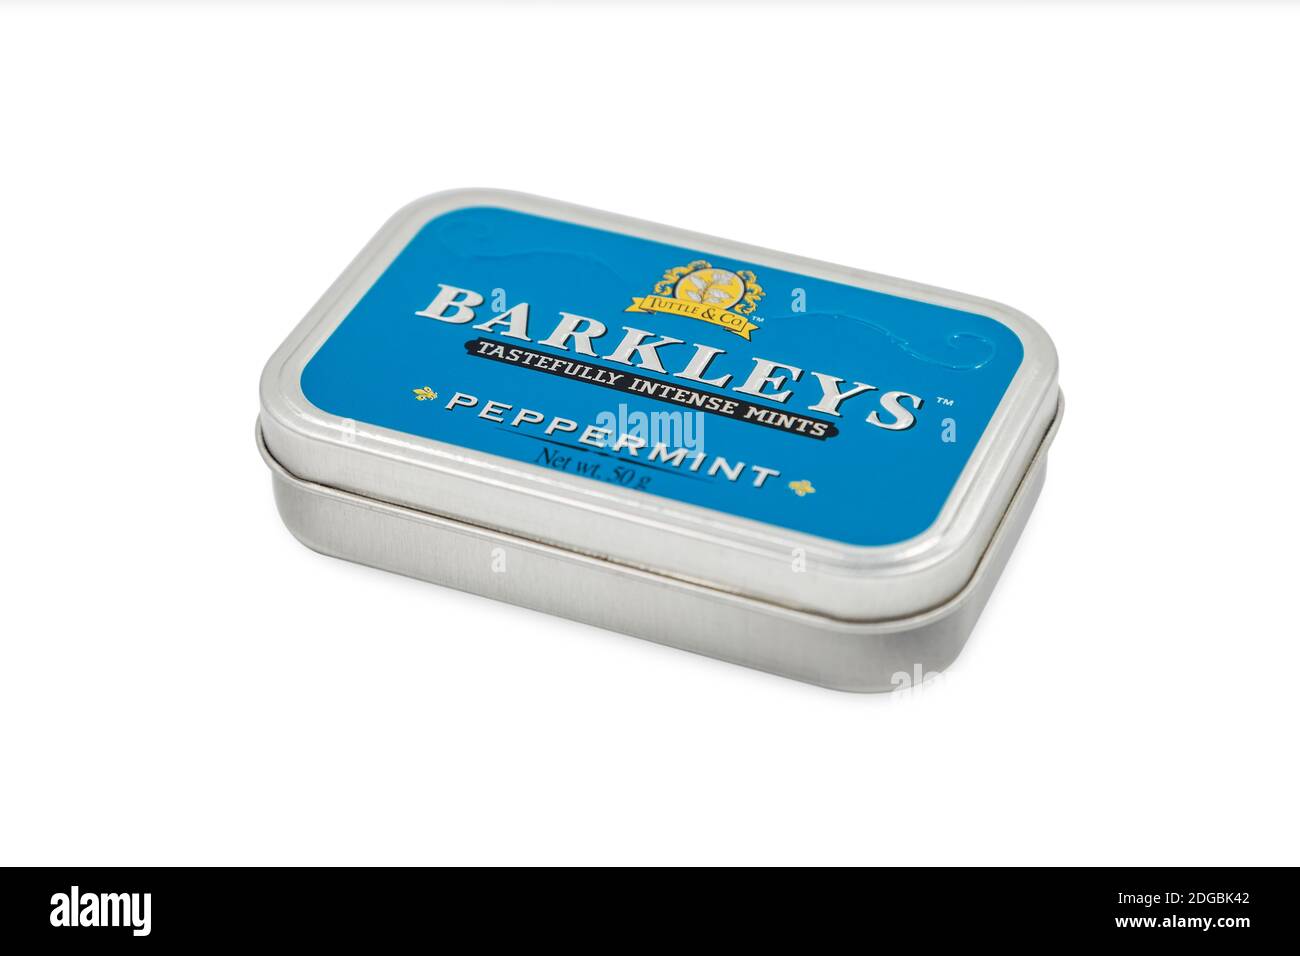 PULA, CROATIE - 6 DÉCEMBRE 2020 : une boîte de bonbons à la menthe poivrée de Barkleys fabriqués à partir de Tuttle & Company a été réputée pour ses produits de confiserie, avec une large gamme de produits Banque D'Images